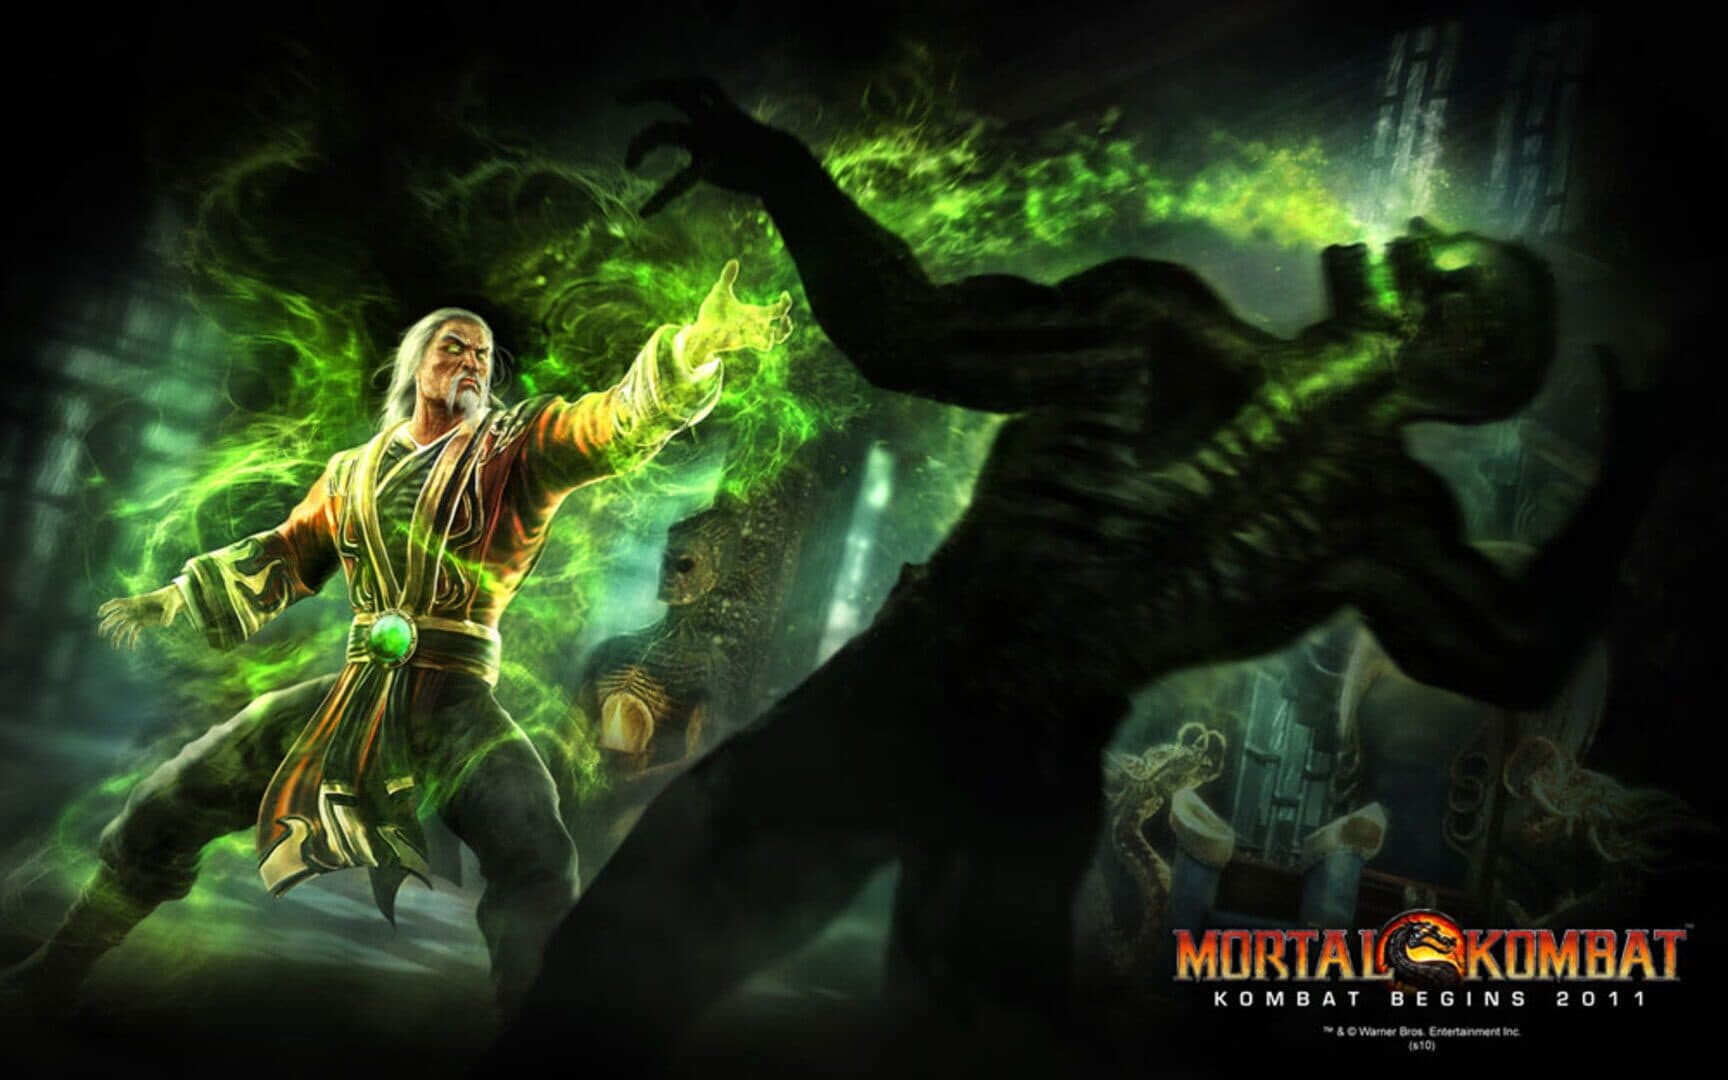 Mortal Kombat Image